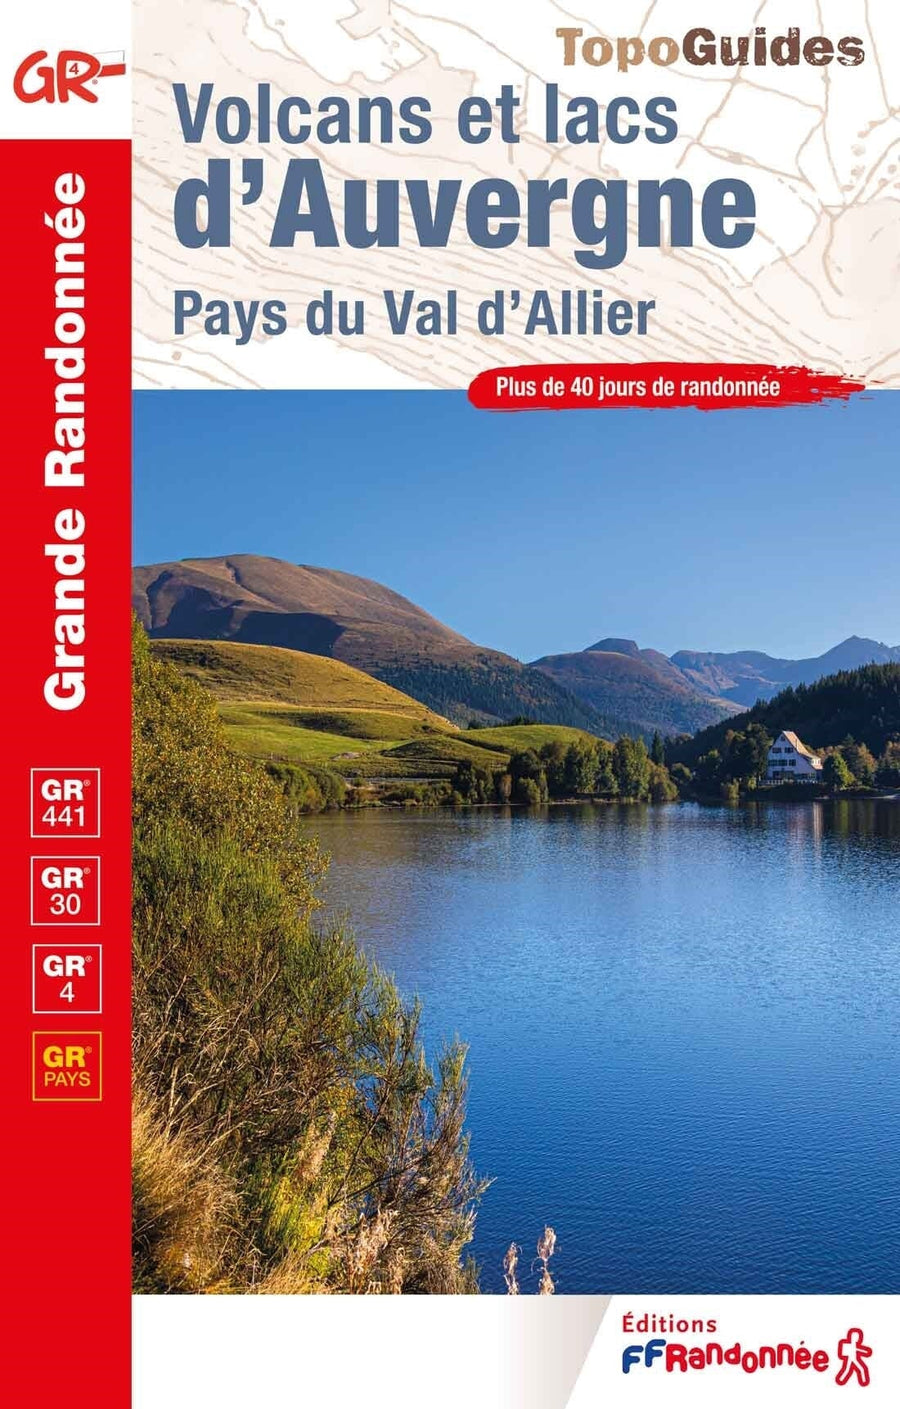 Topoguide de randonnée - Volcans & lacs d'Auvergne, Pays du Val d'Allier GR4, GR30, GR441 | FFR guide de randonnée FFR - Fédération Française de Randonnée 